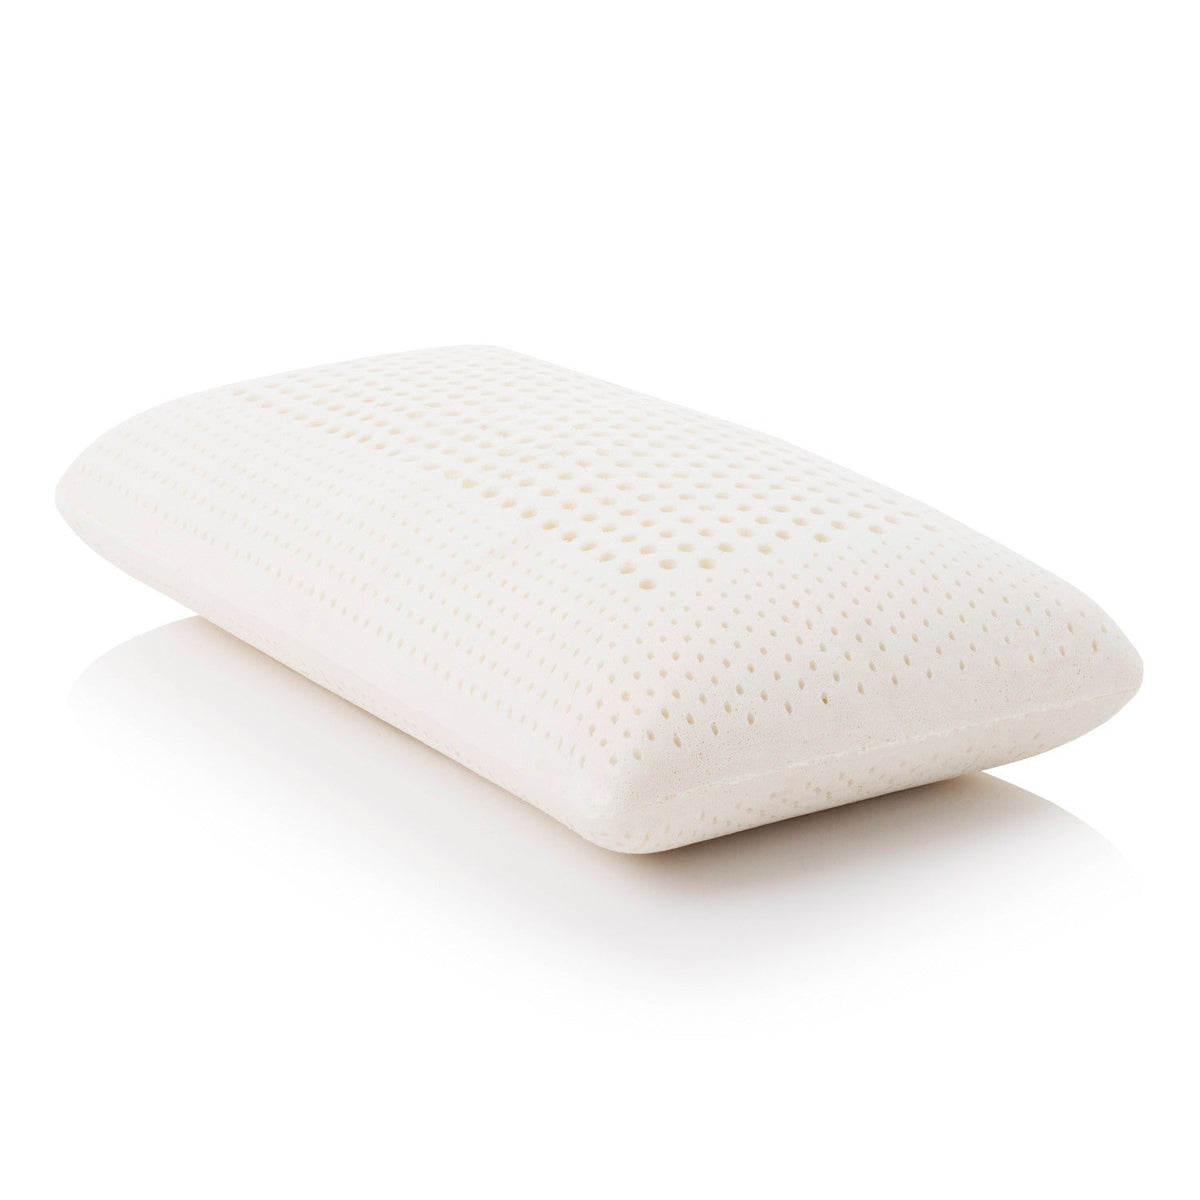 Z Latex Pillow - Low Loft Plush